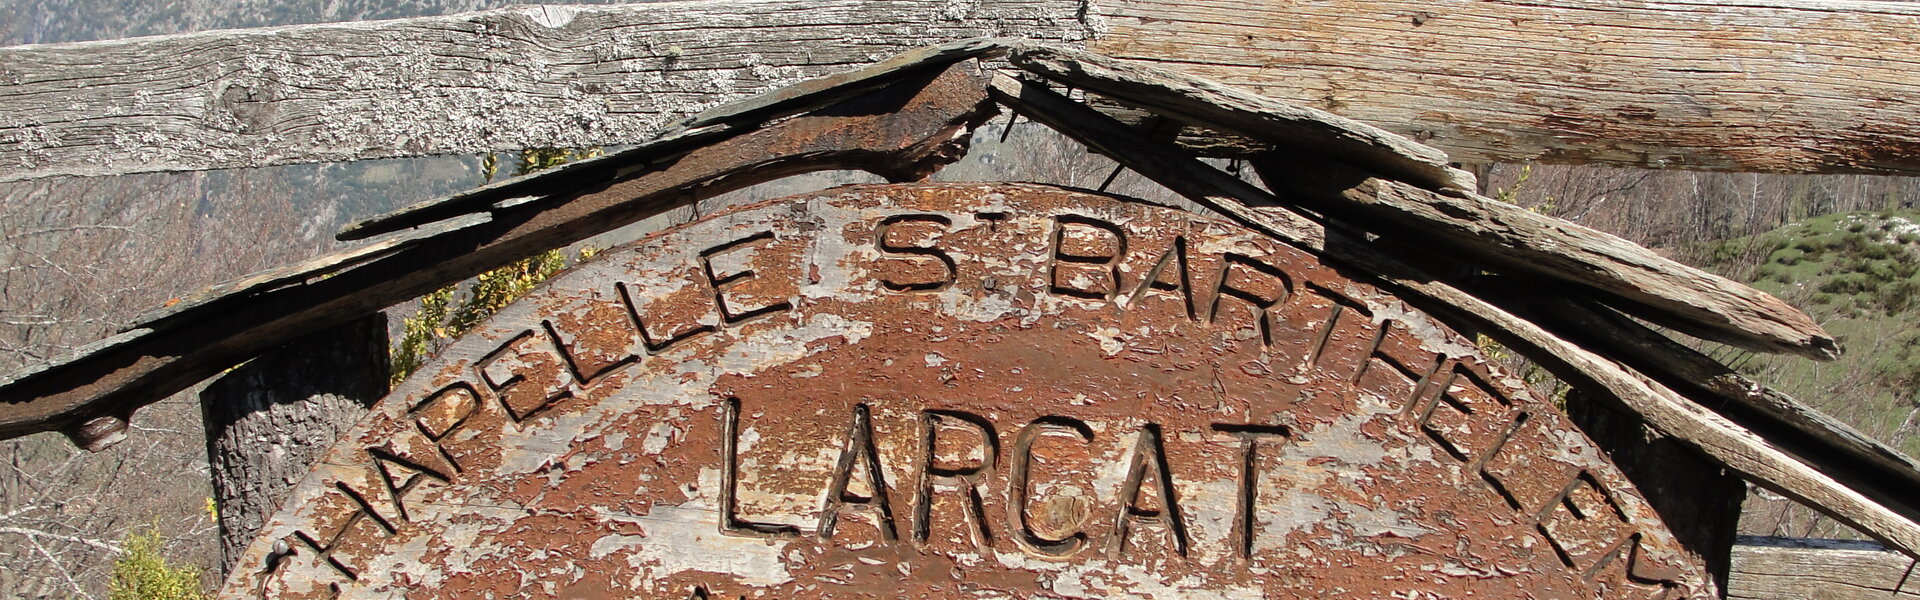 Larcat est un petit village situé en haute-vallée de l'Ariège.